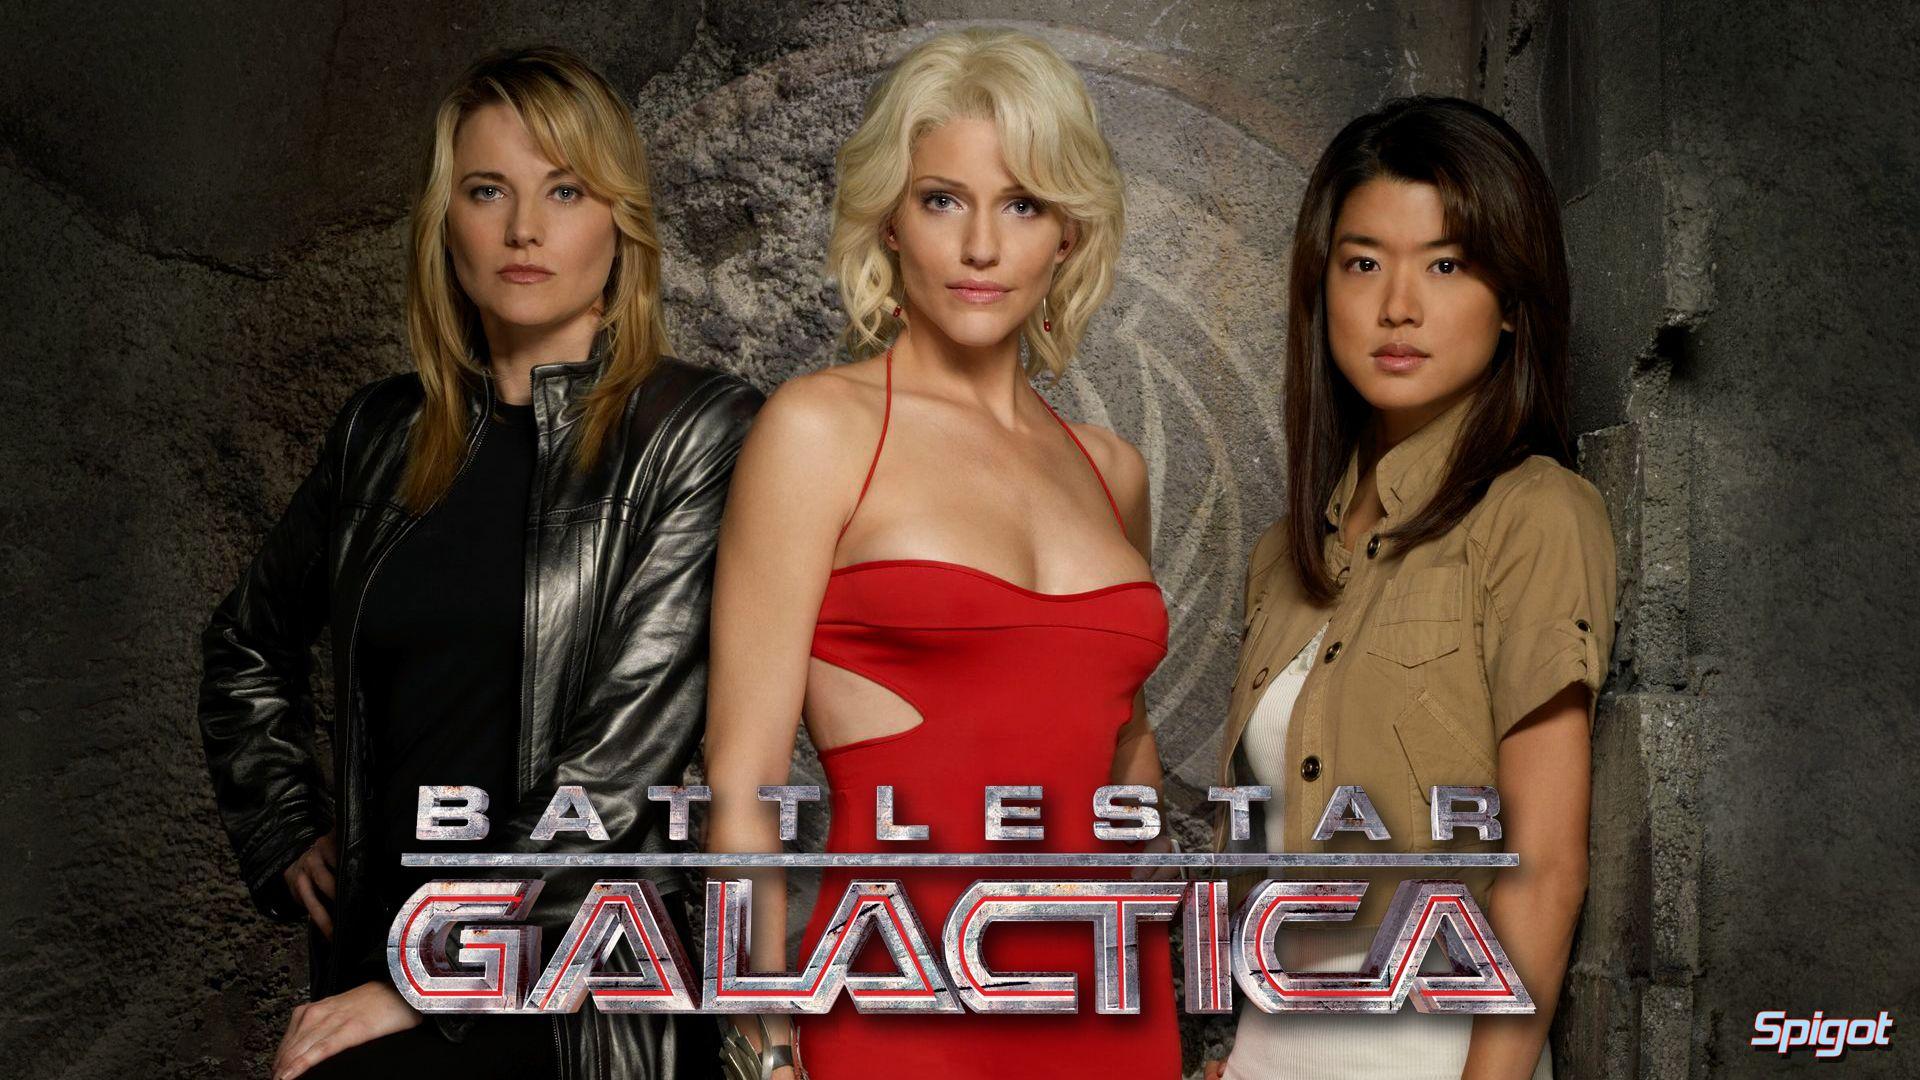 Another Battlestar Galactica Wallpaper. George Spigot's Blog